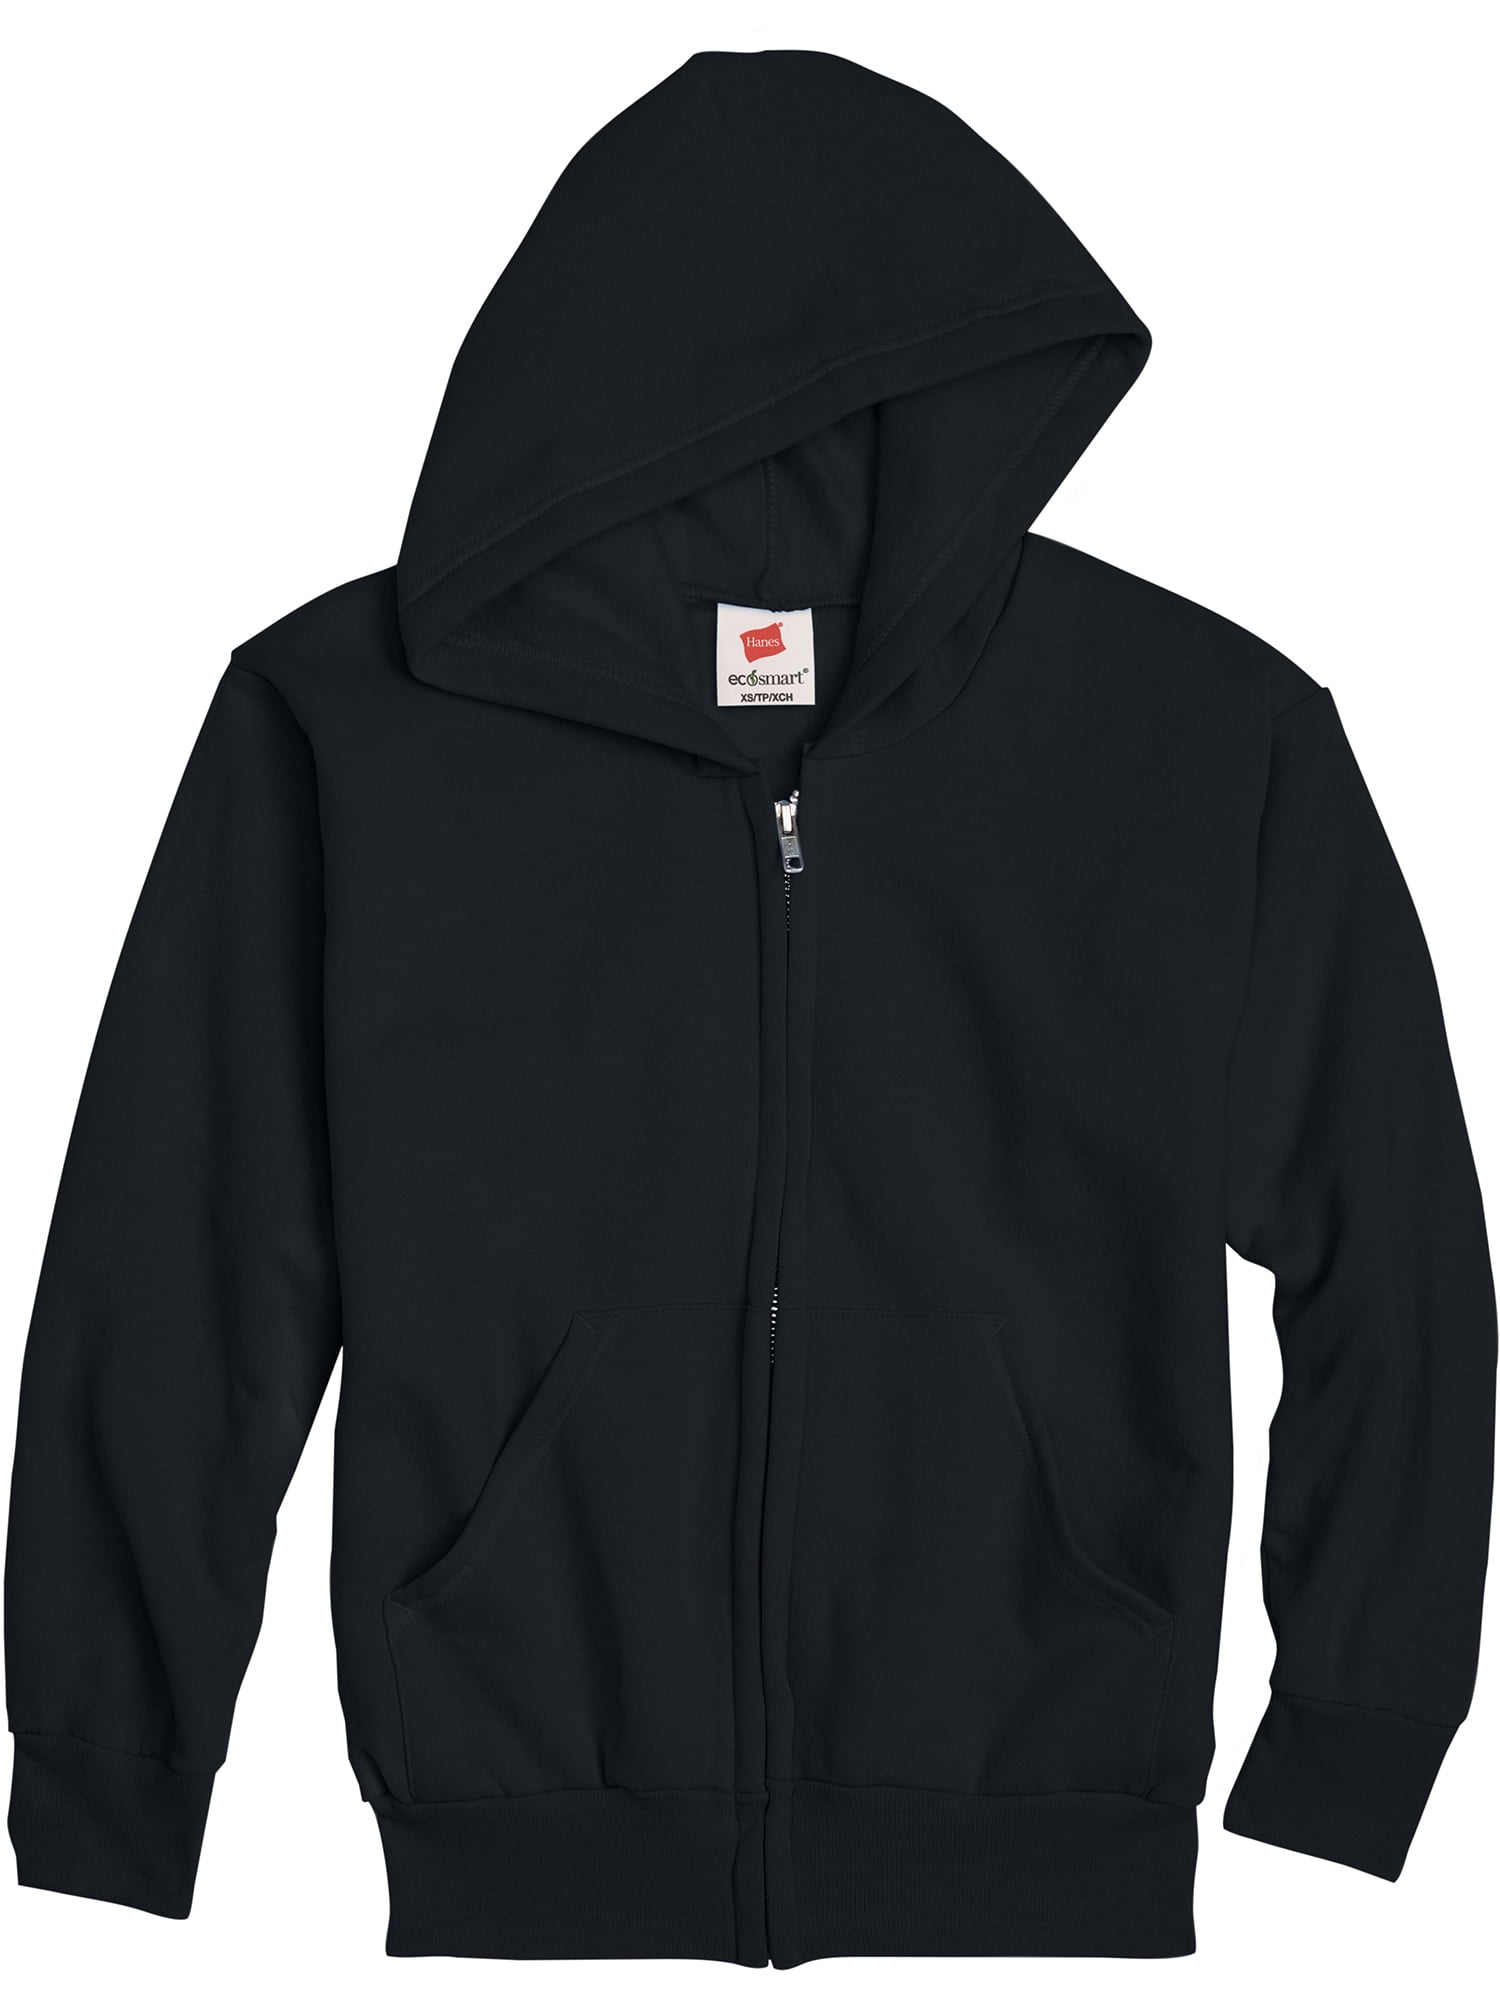 Hanes Boys EcoSmart Fleece Full Zip Hooded Jacket, Sizes 4-18 - Walmart.com